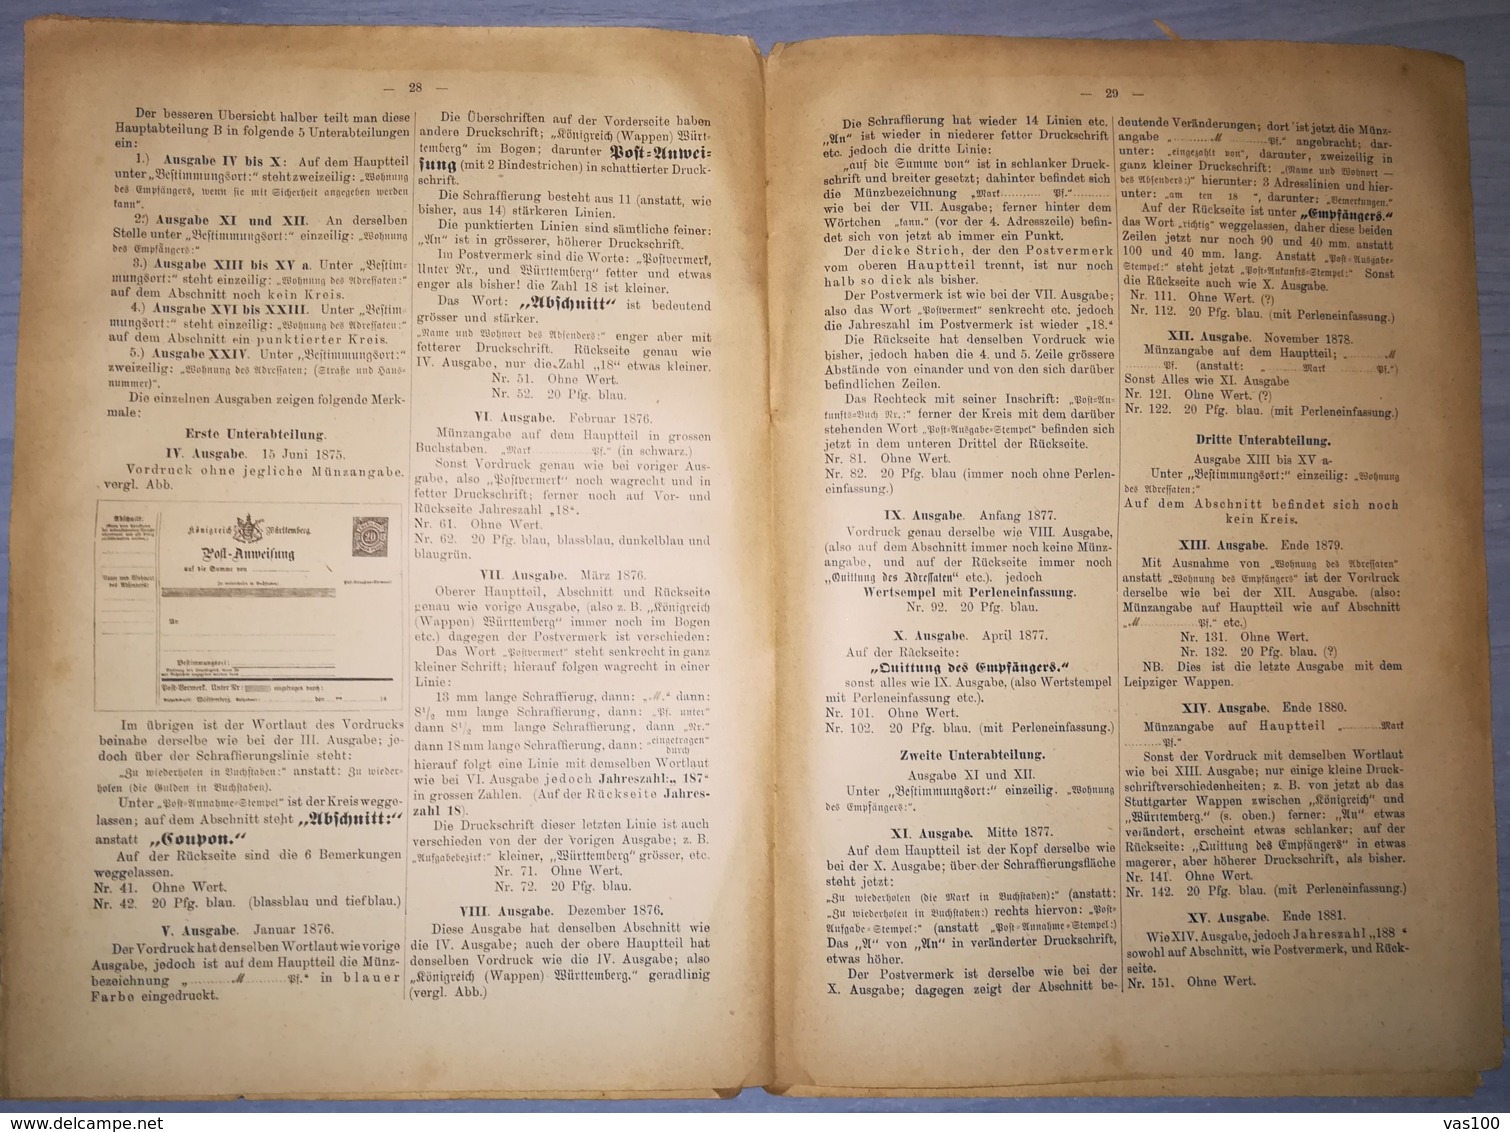 ILLUSTRATED STAMPS JOURNAL- ILLUSTRIERTES BRIEFMARKEN JOURNAL MAGAZINE SUPPLEMENT, LEIPZIG, NR 4, 1893, GERMANY - German (until 1940)